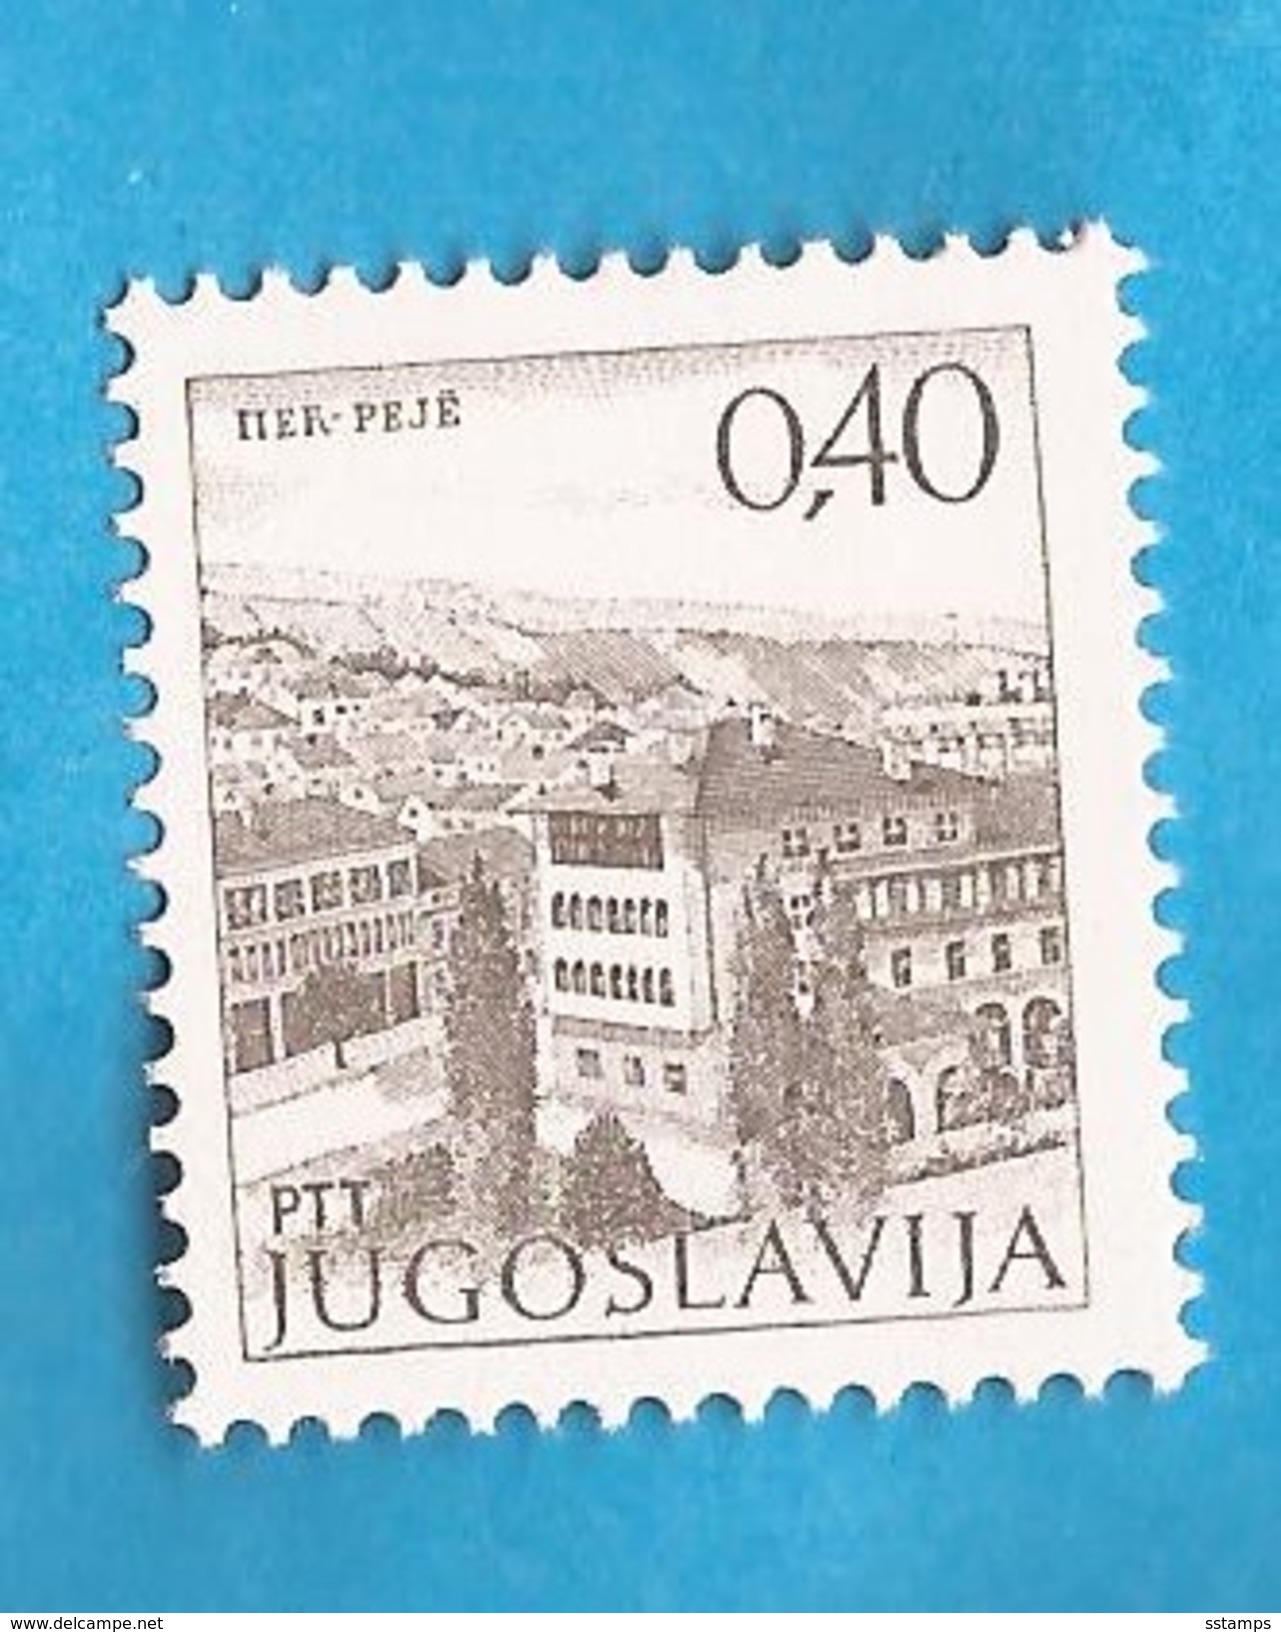 1972 1481 IIXC  OFSET PERF-  13 1-4 -- 12 1-2  KOSOVO  PECJUGOSLAVIJA JUGOSLAWIEN  BEACHTEN -- GUMMI  MATT  MNH - Unused Stamps